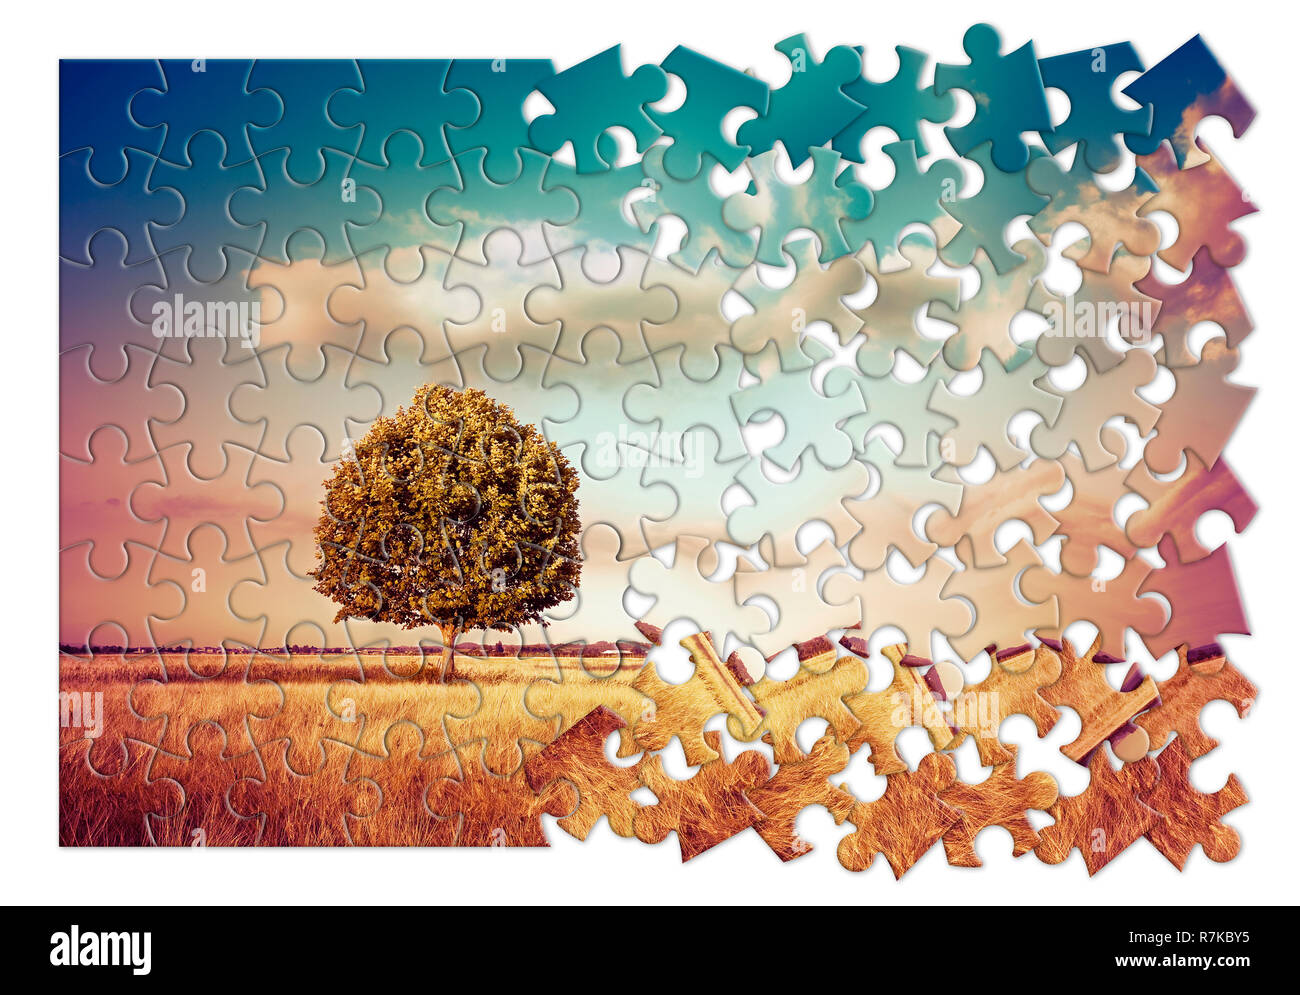 Isolierte Baum in einer ländlichen Szene in der Toskana (Italien) - Umweltschutz Konzept Bild im Puzzle Form Stockfoto